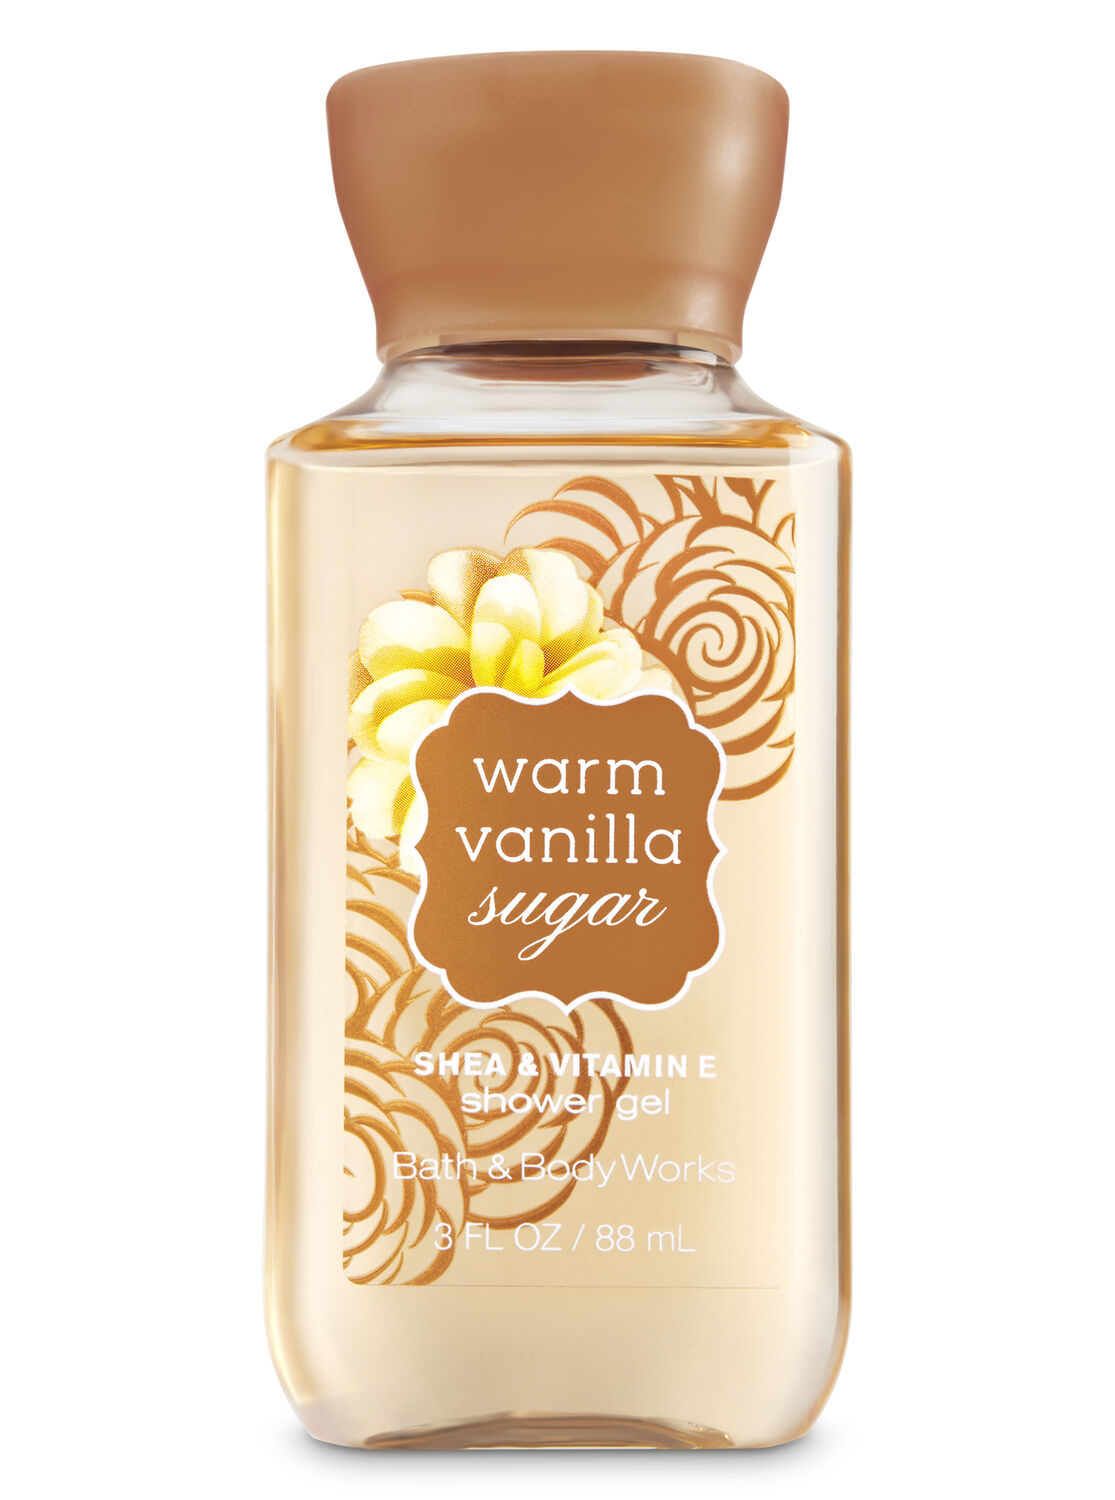 Signature Collection Warm Vanilla Sugar Travel Size Shower Gel